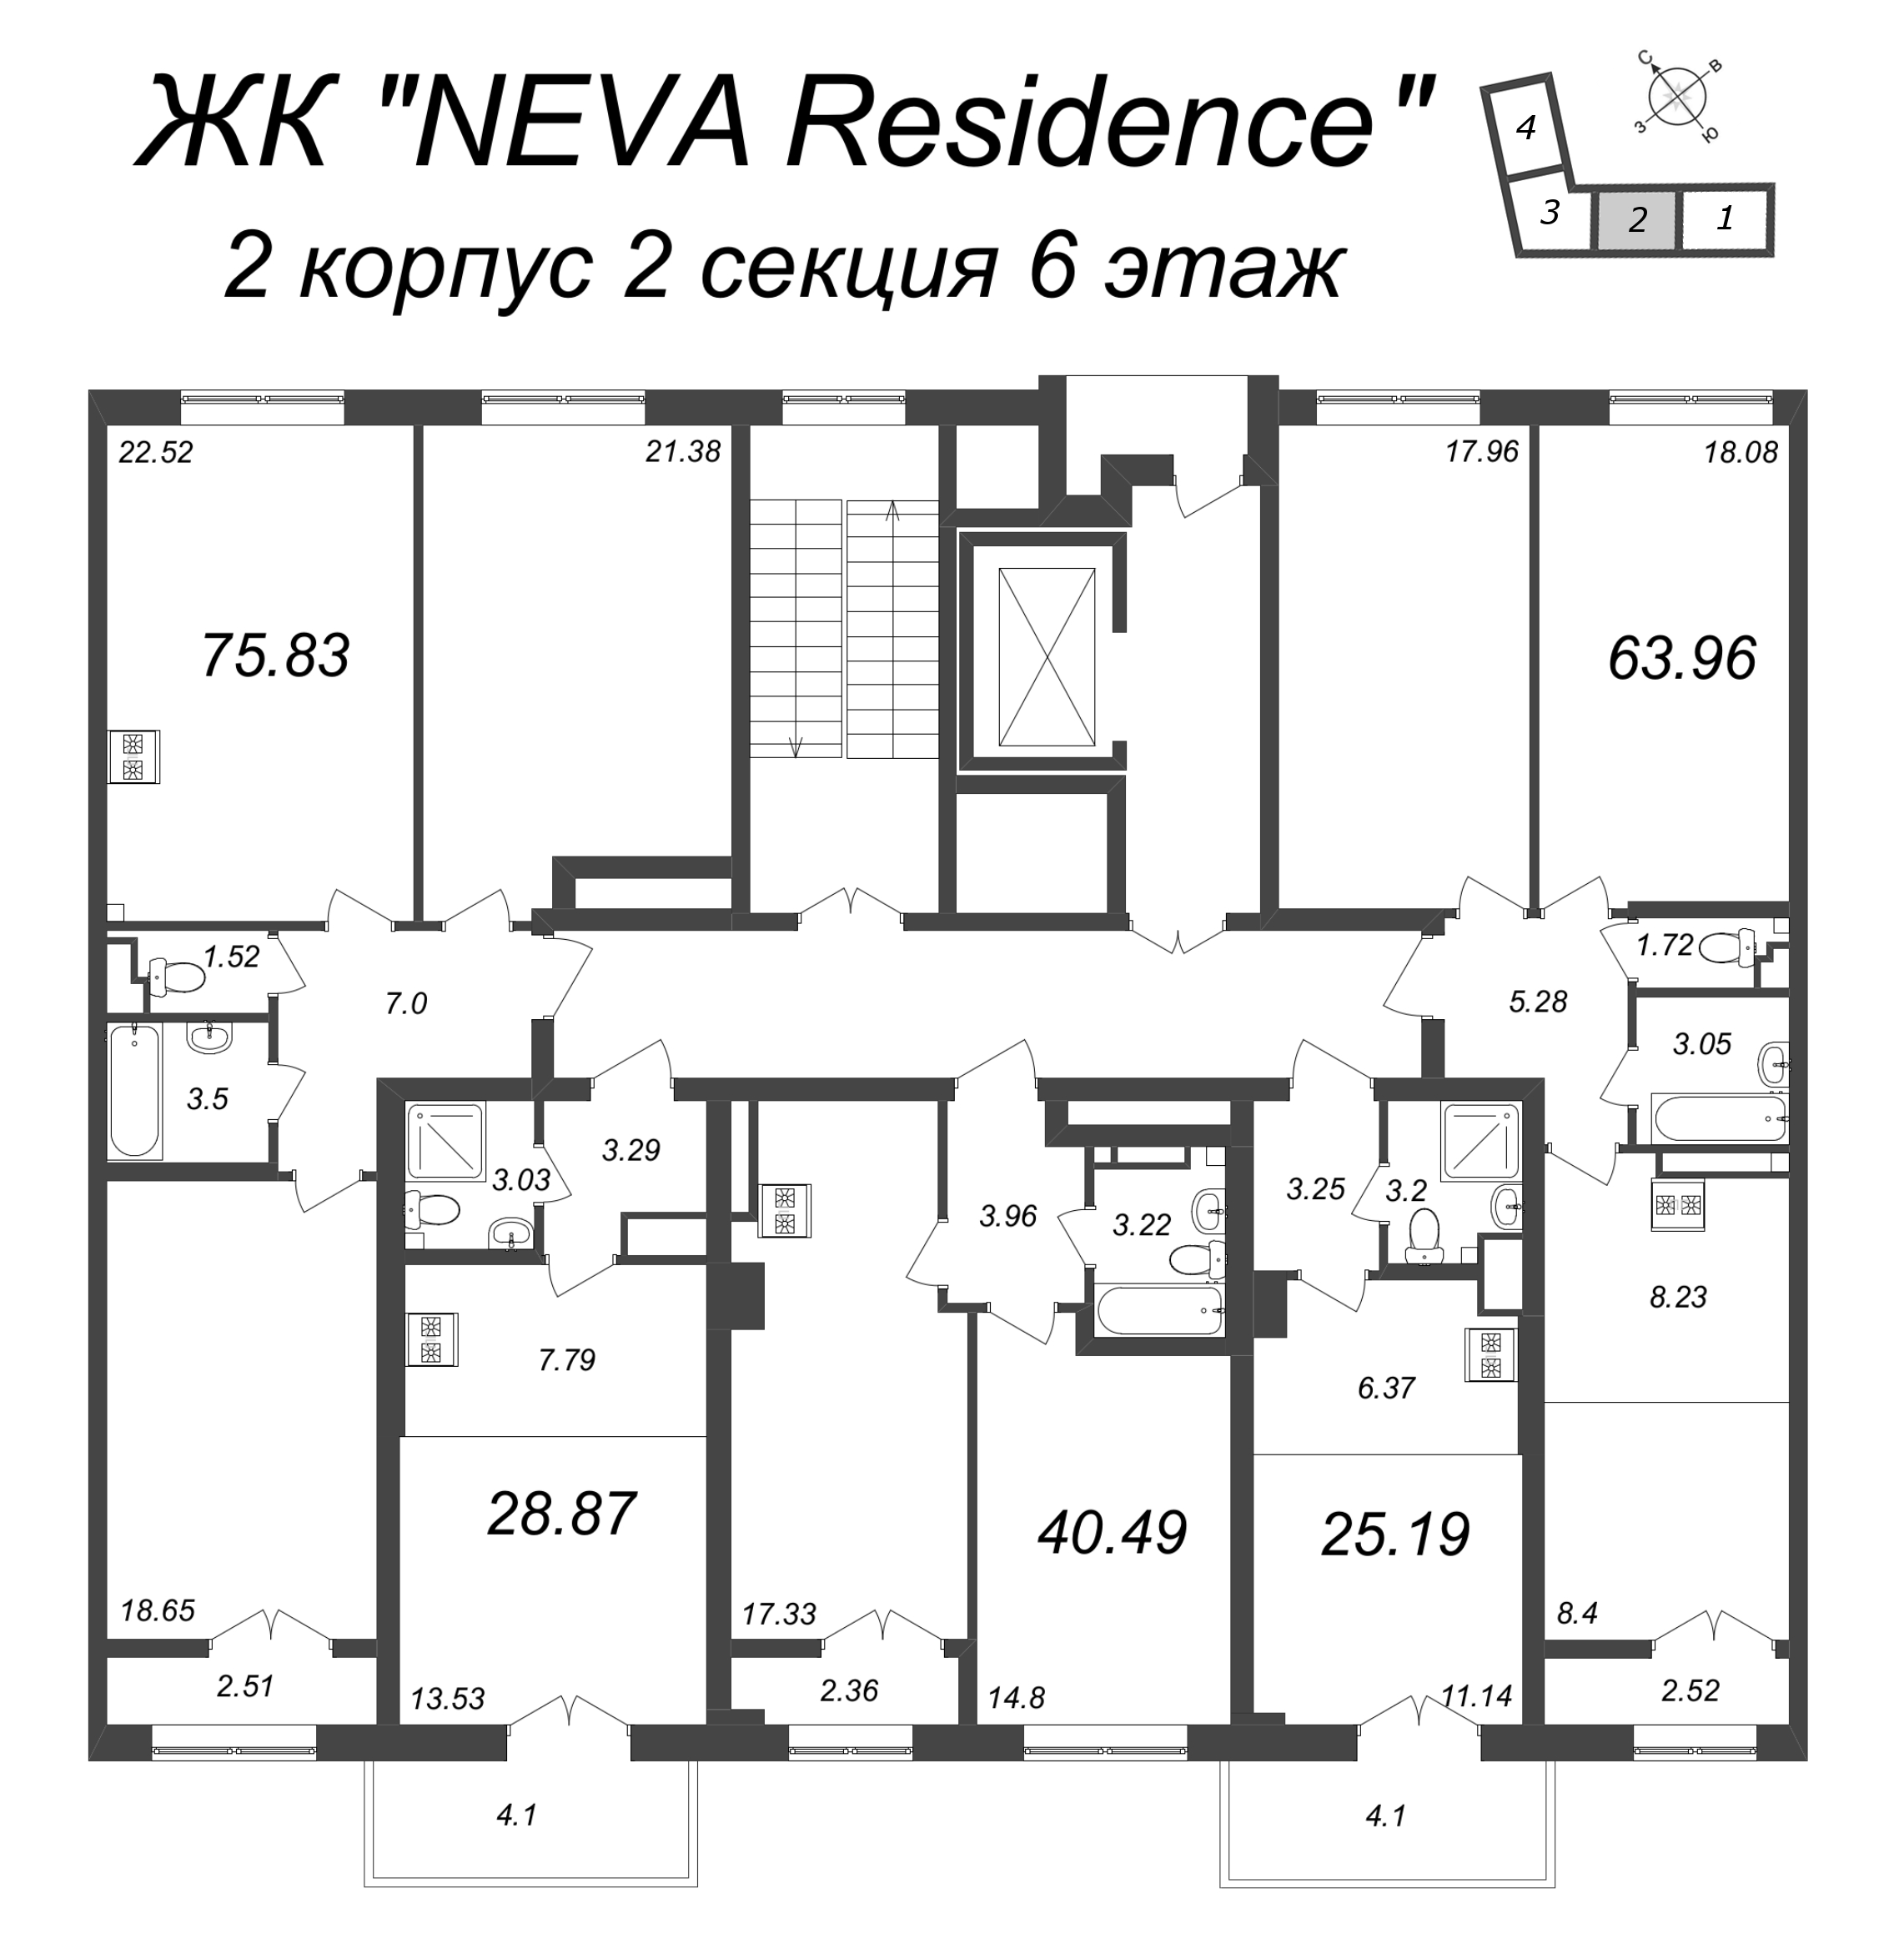 2-комнатная (Евро) квартира, 40.49 м² в ЖК "Neva Residence" - планировка этажа